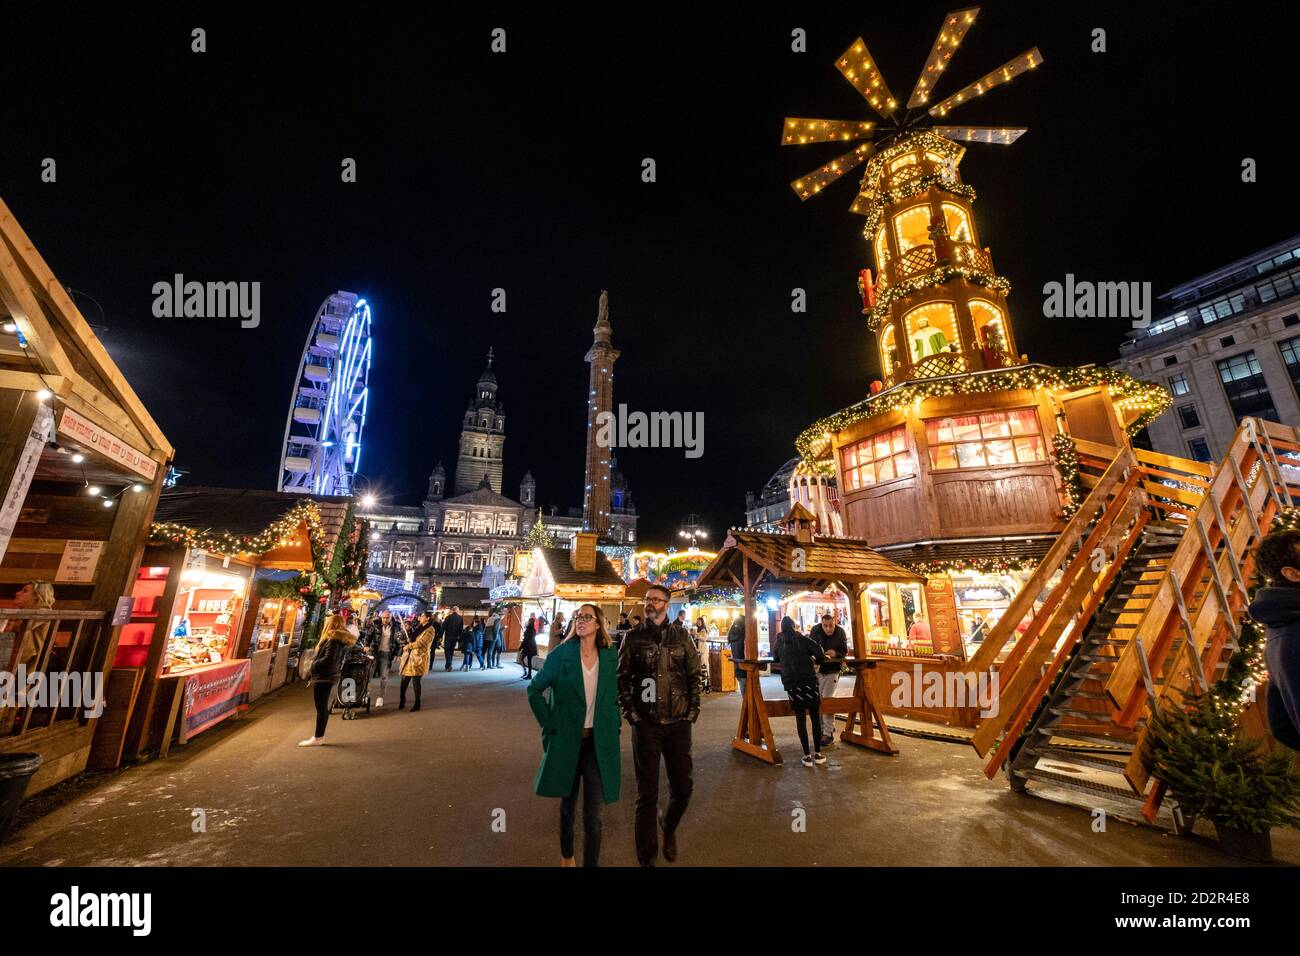 Mercado de Navidad de George Square, Glasgow,lowands, Reino Unido Stock Photo